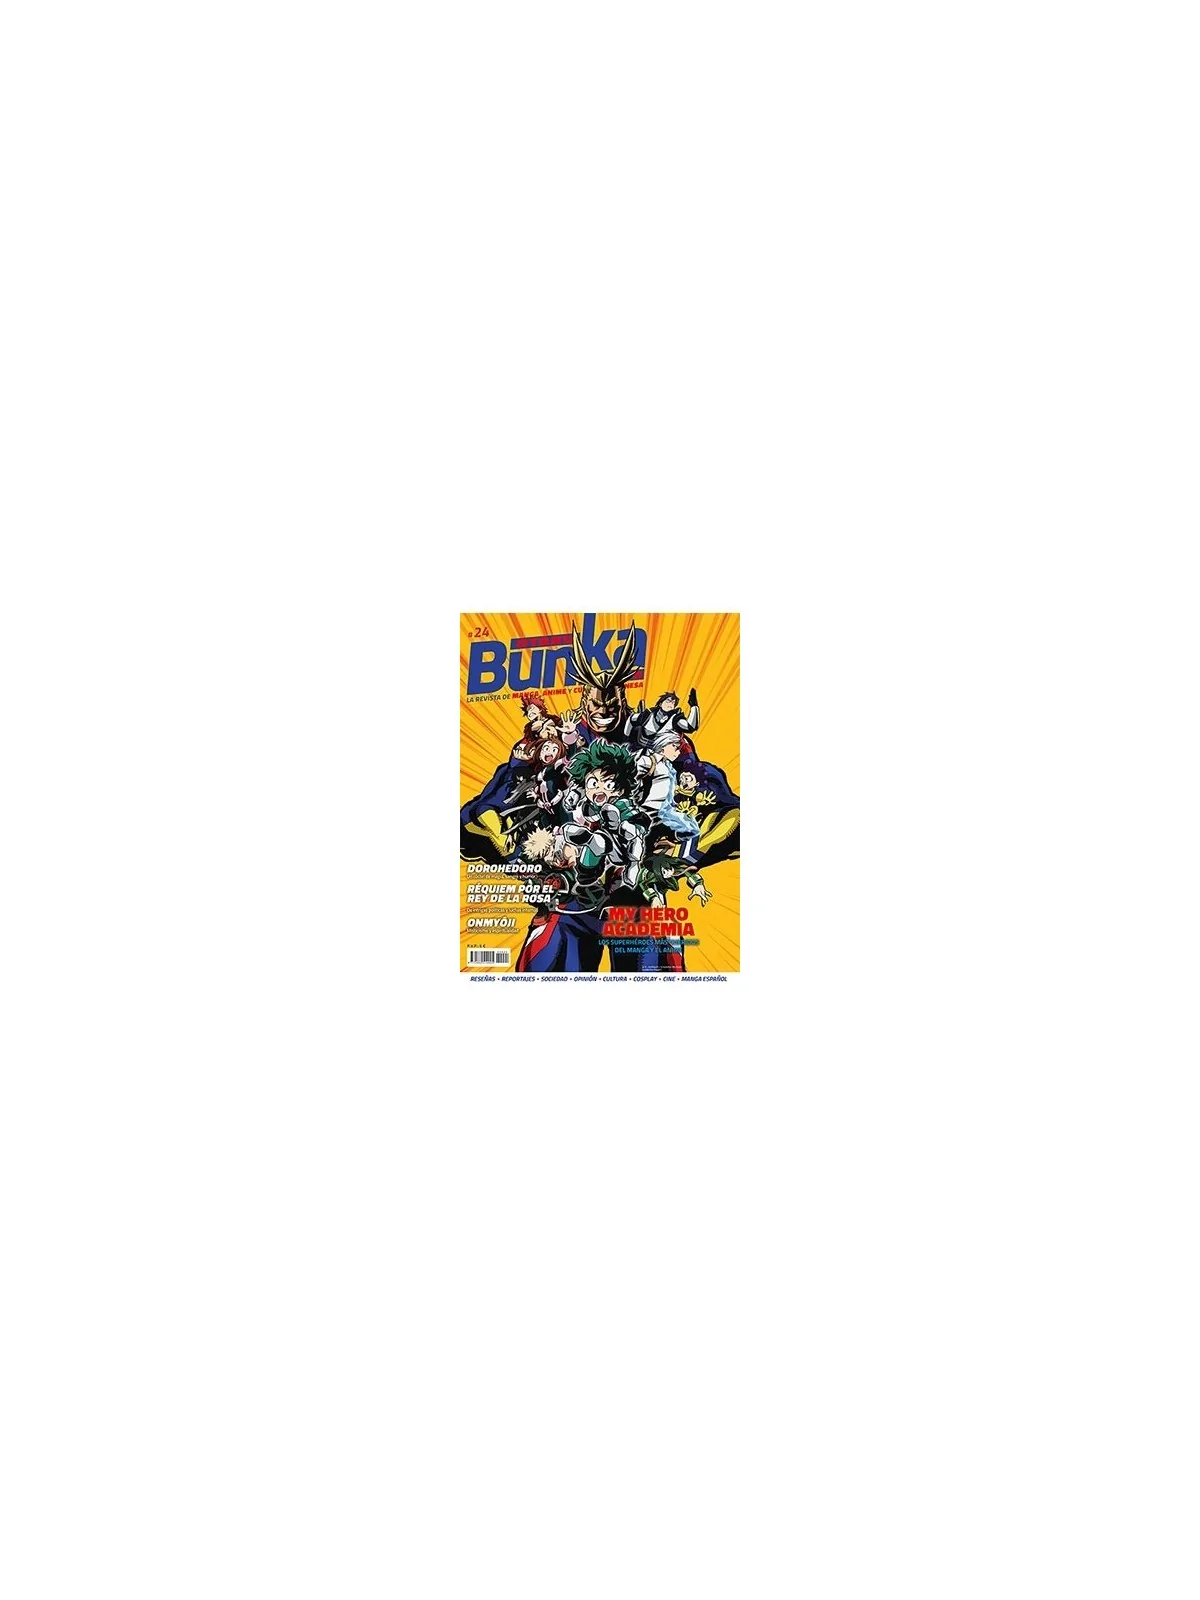 Comprar Otaku Bunka 24 barato al mejor precio 5,70 € de Panini Comics